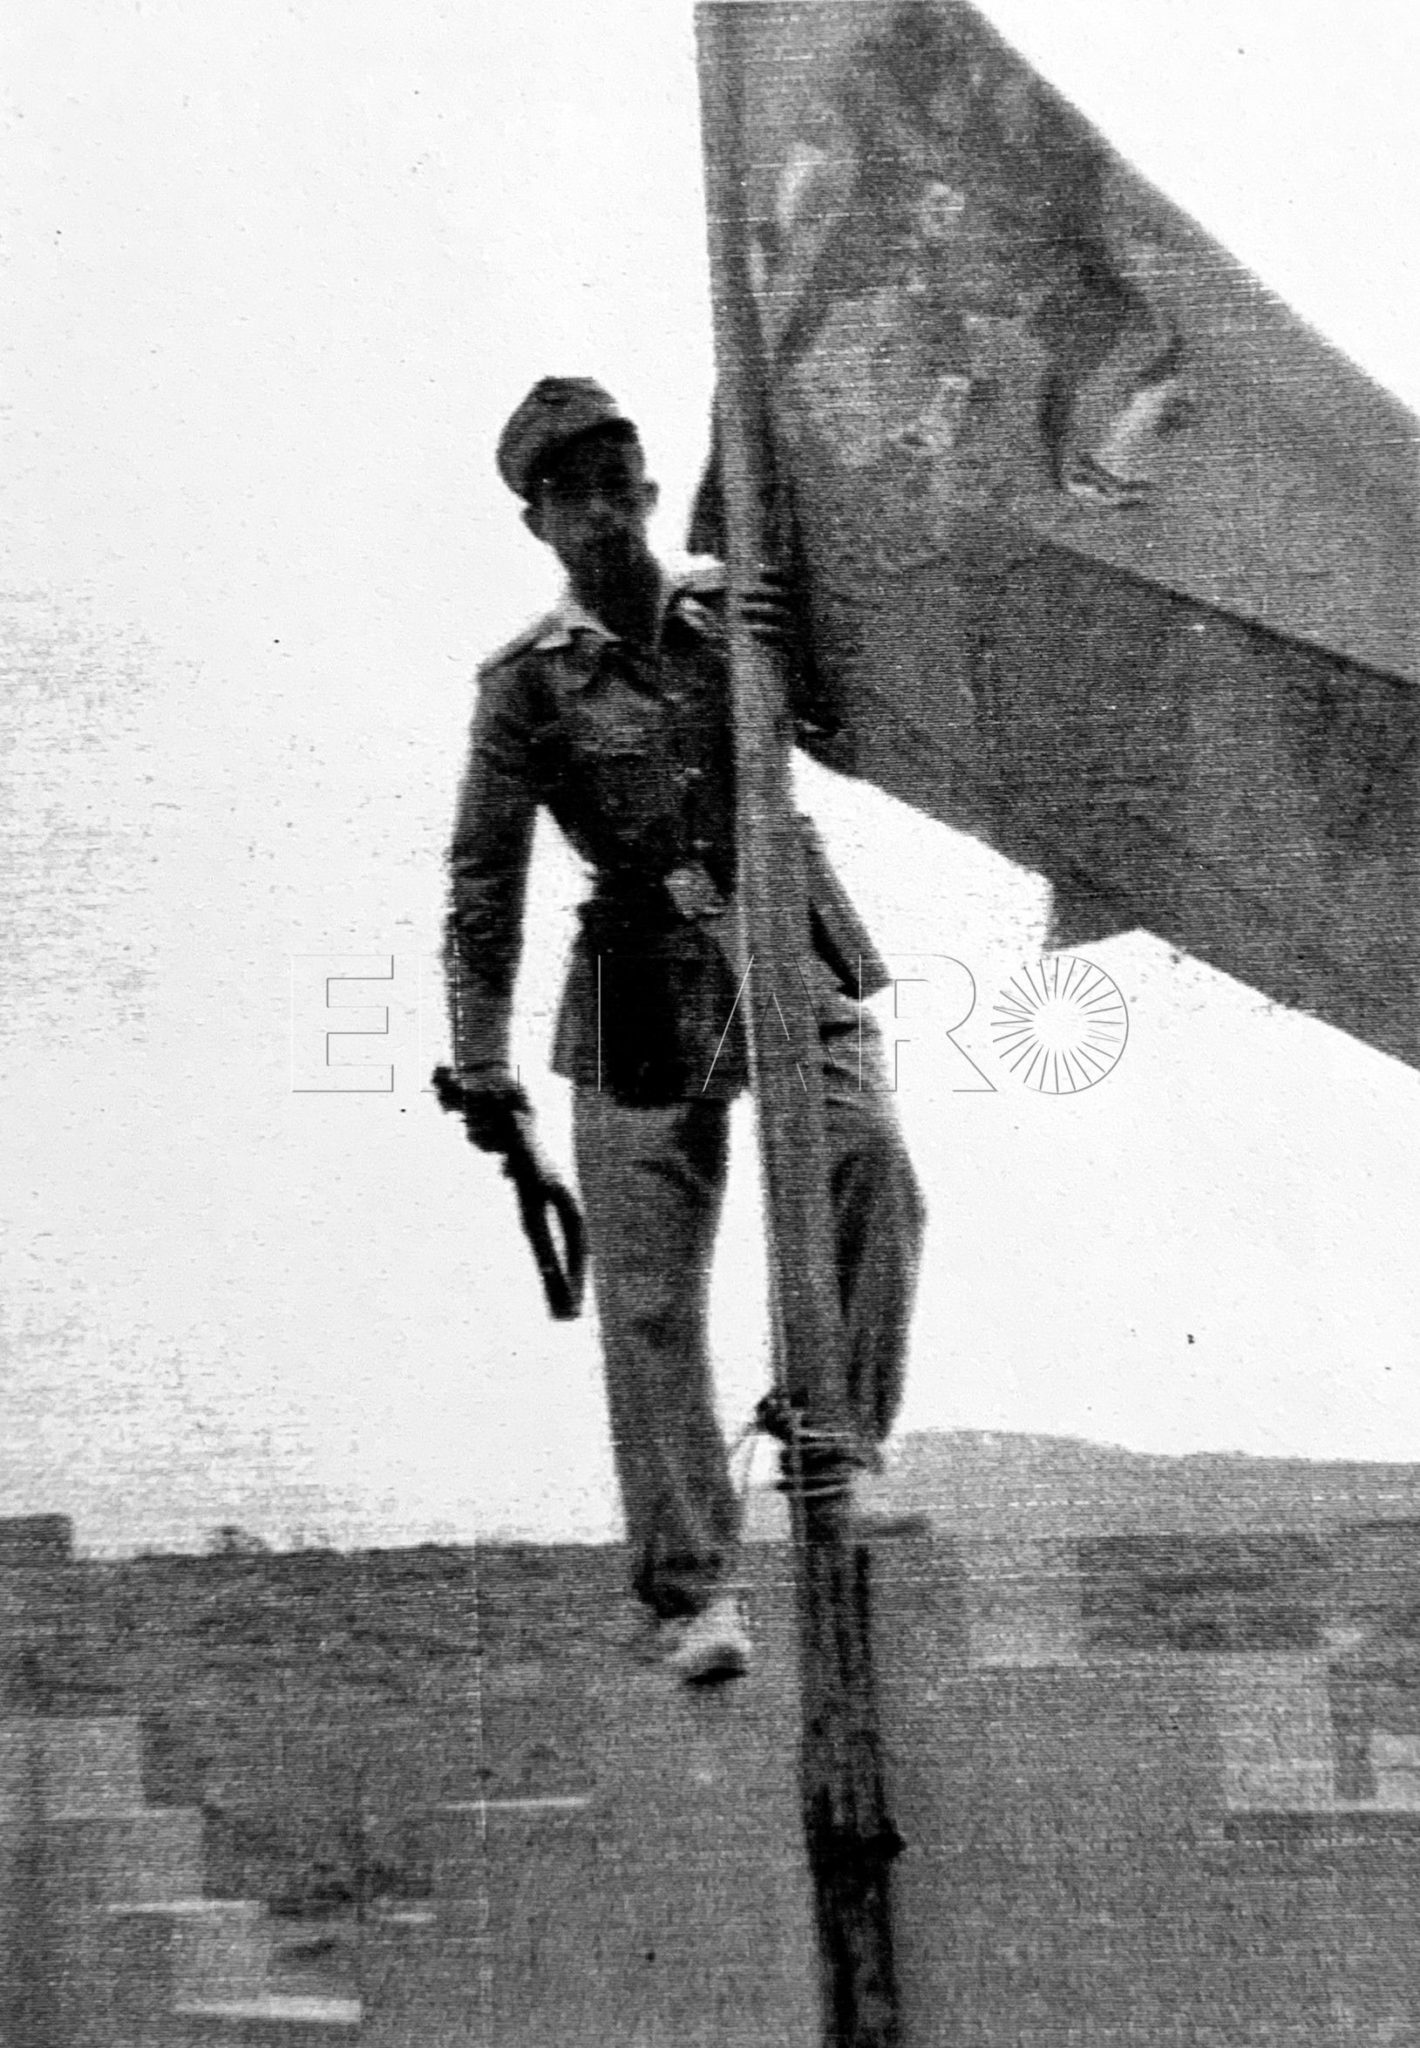 El cabo Manuel Castilla Díaz en lo alto del puesto de Telata agarrado al mástil donde ondea la bandera de Espana-1